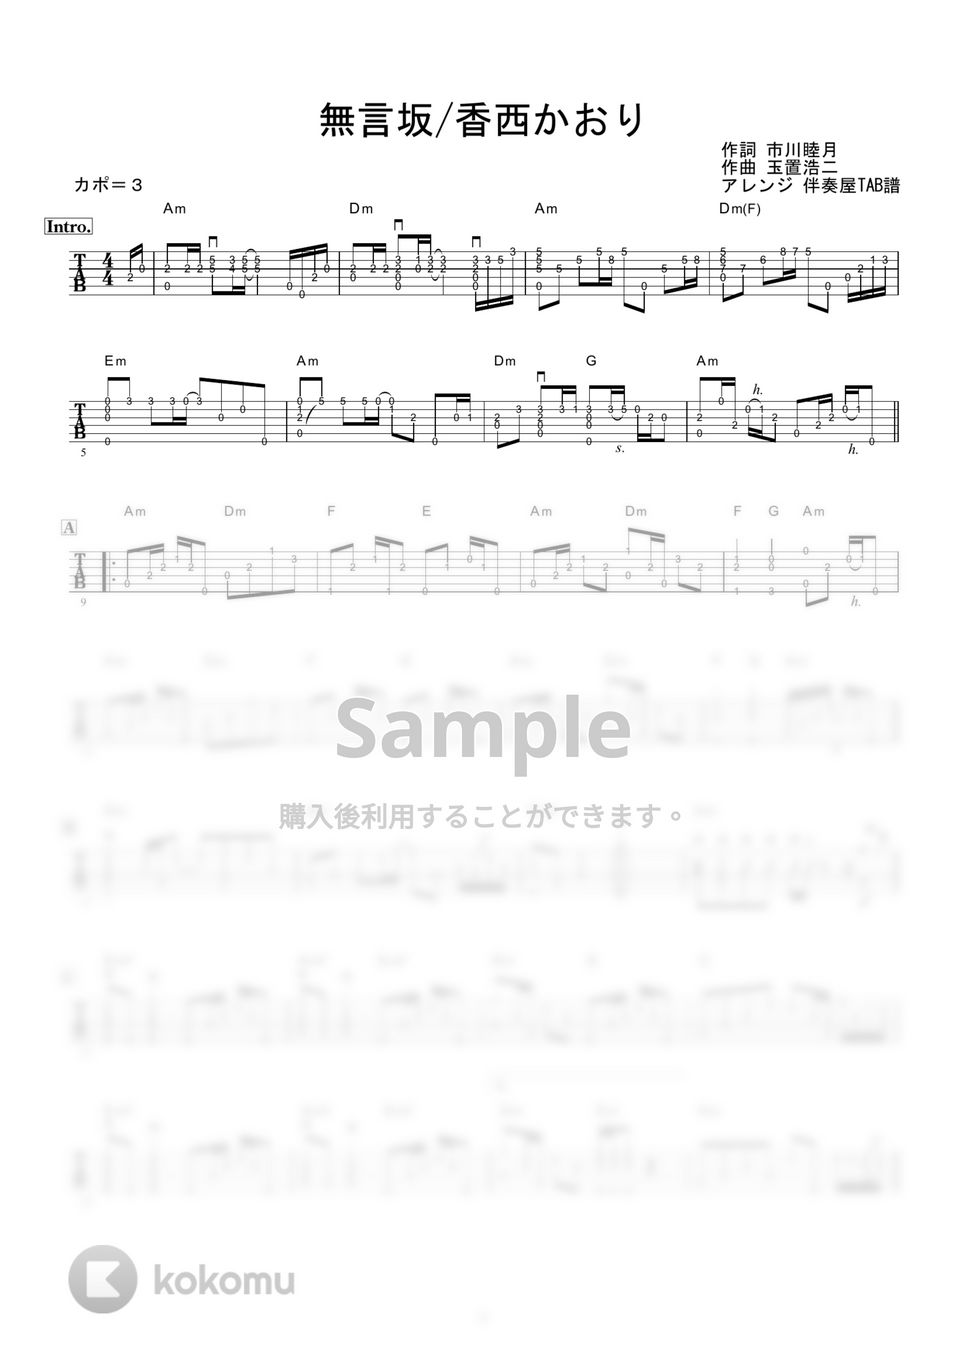 香西かおり - 無言坂 (ギター伴奏/イントロ・間奏ソロギター) by 伴奏屋TAB譜